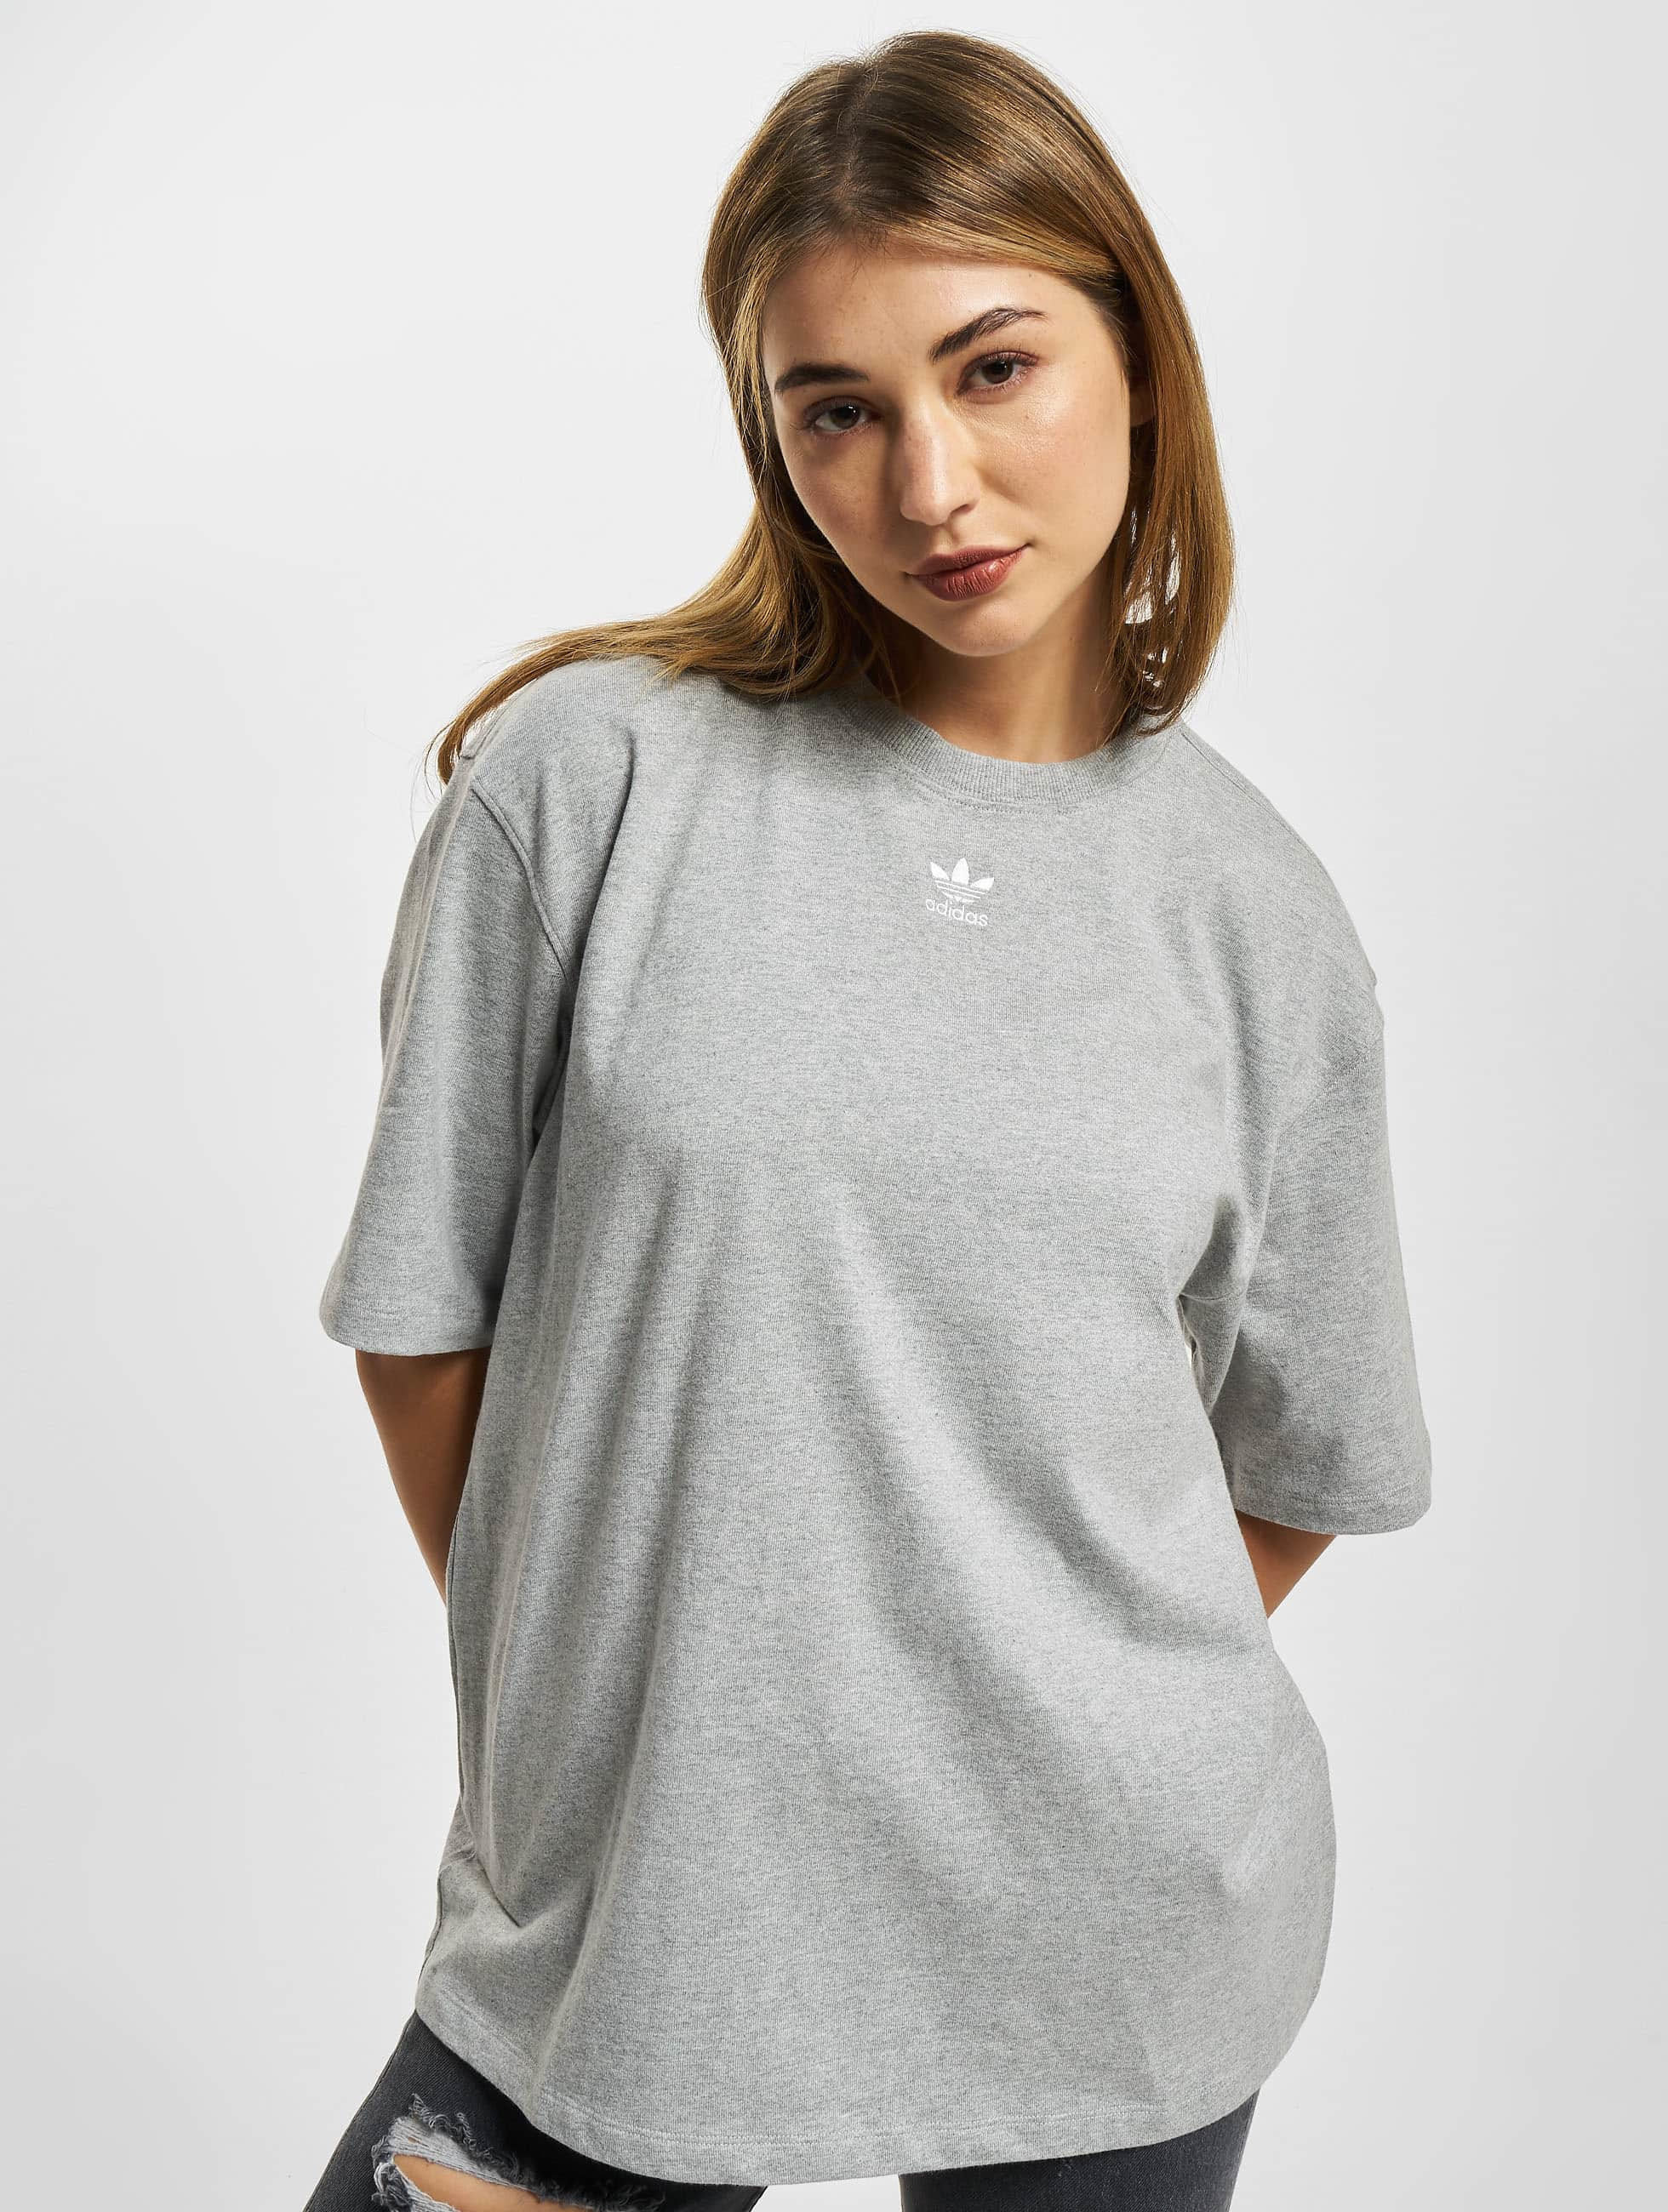 Product gelei Verhuizer adidas Originals bovenstuk / t-shirt Originals in grijs 988001